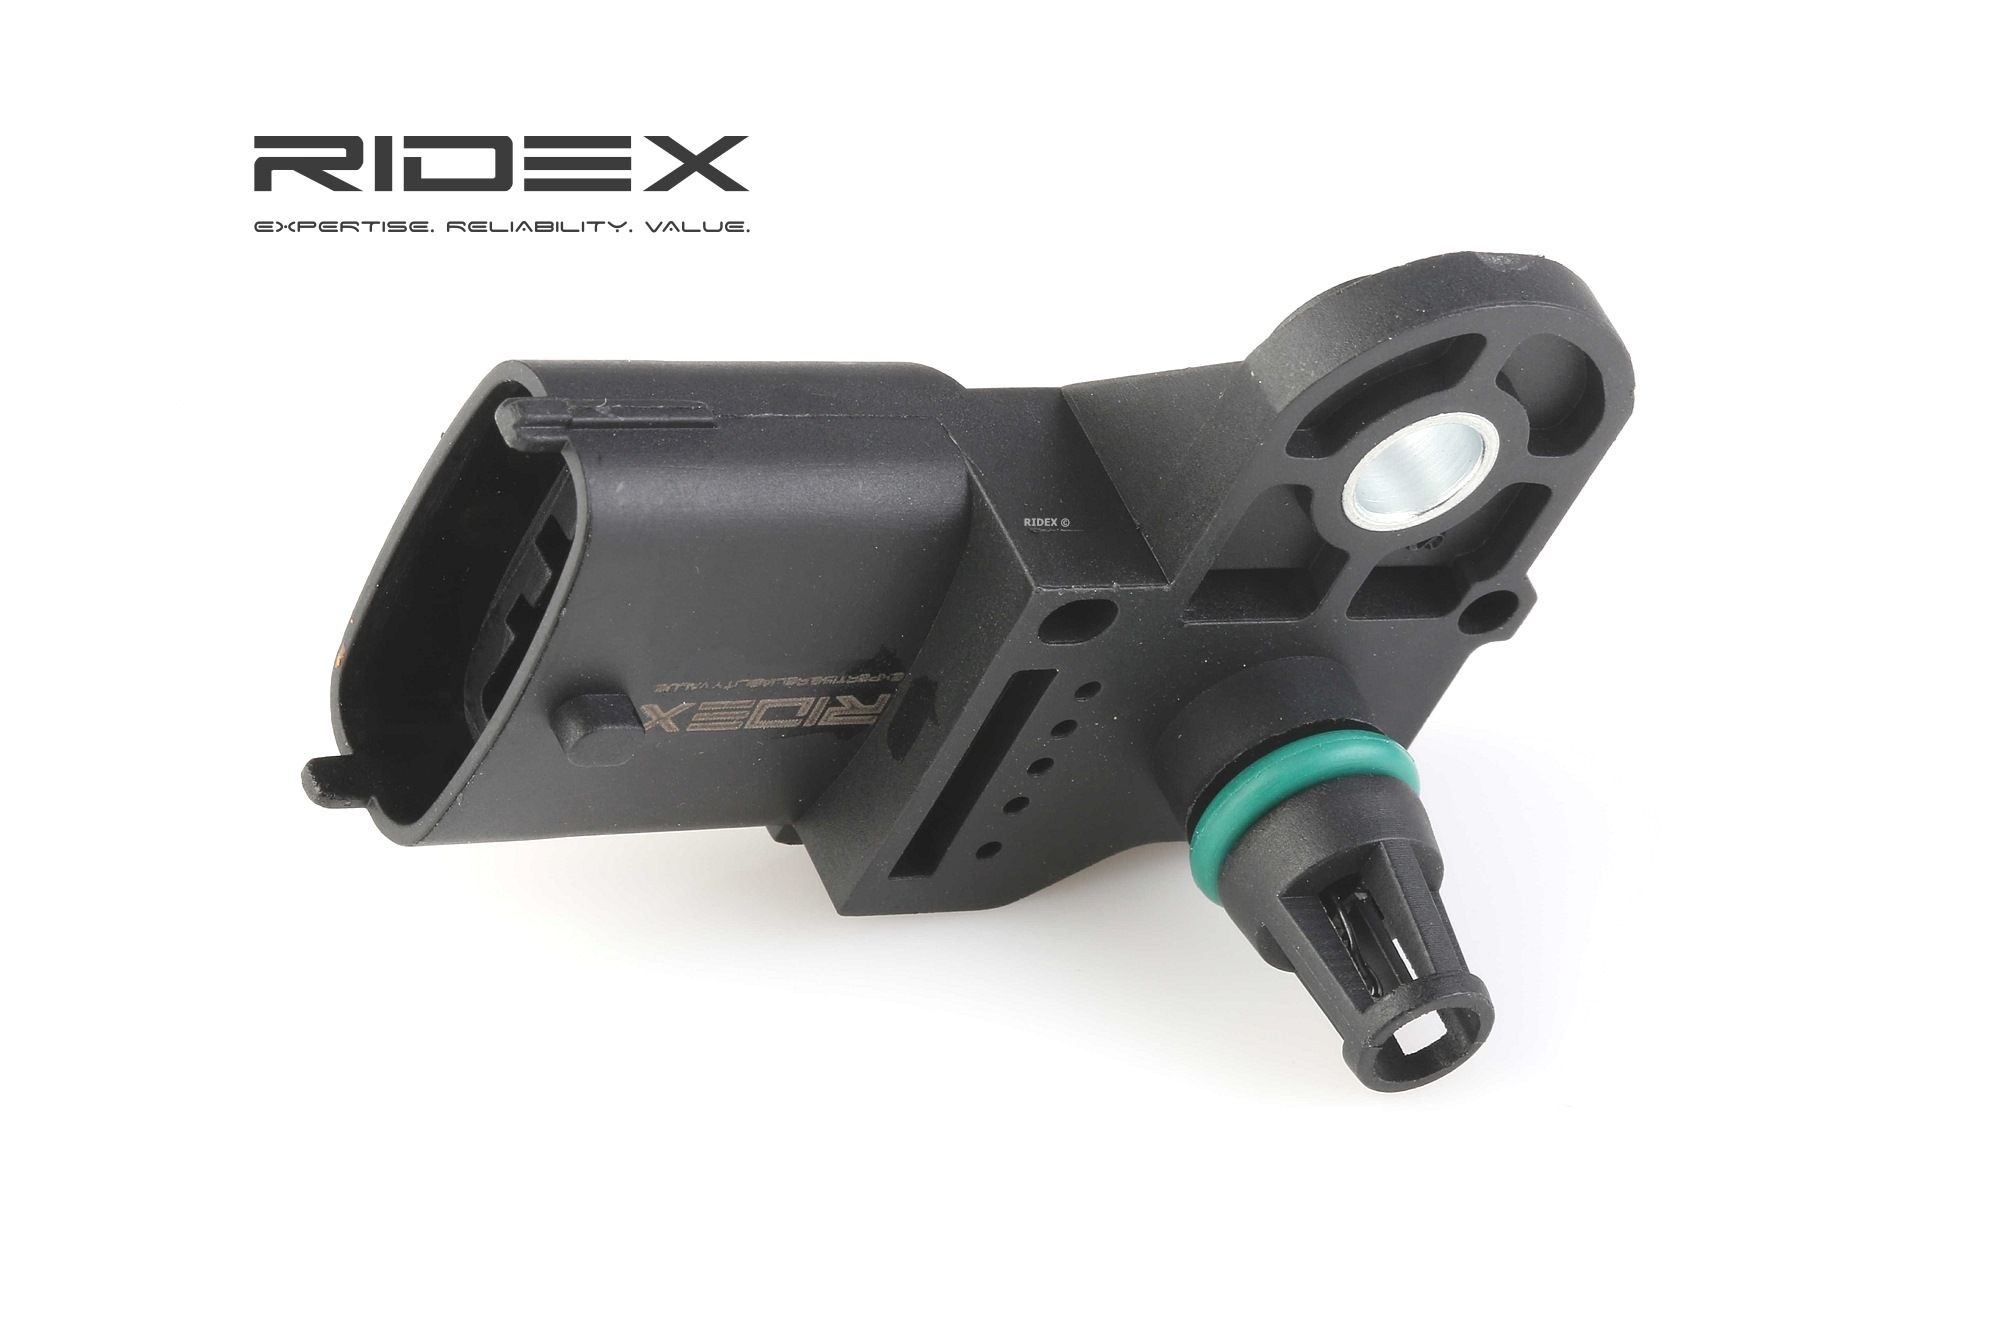 Ladedrucksensor RIDEX 161B0003 - CADILLAC Steuergeräte, Sensoren, Relais Ersatzteile online kaufen